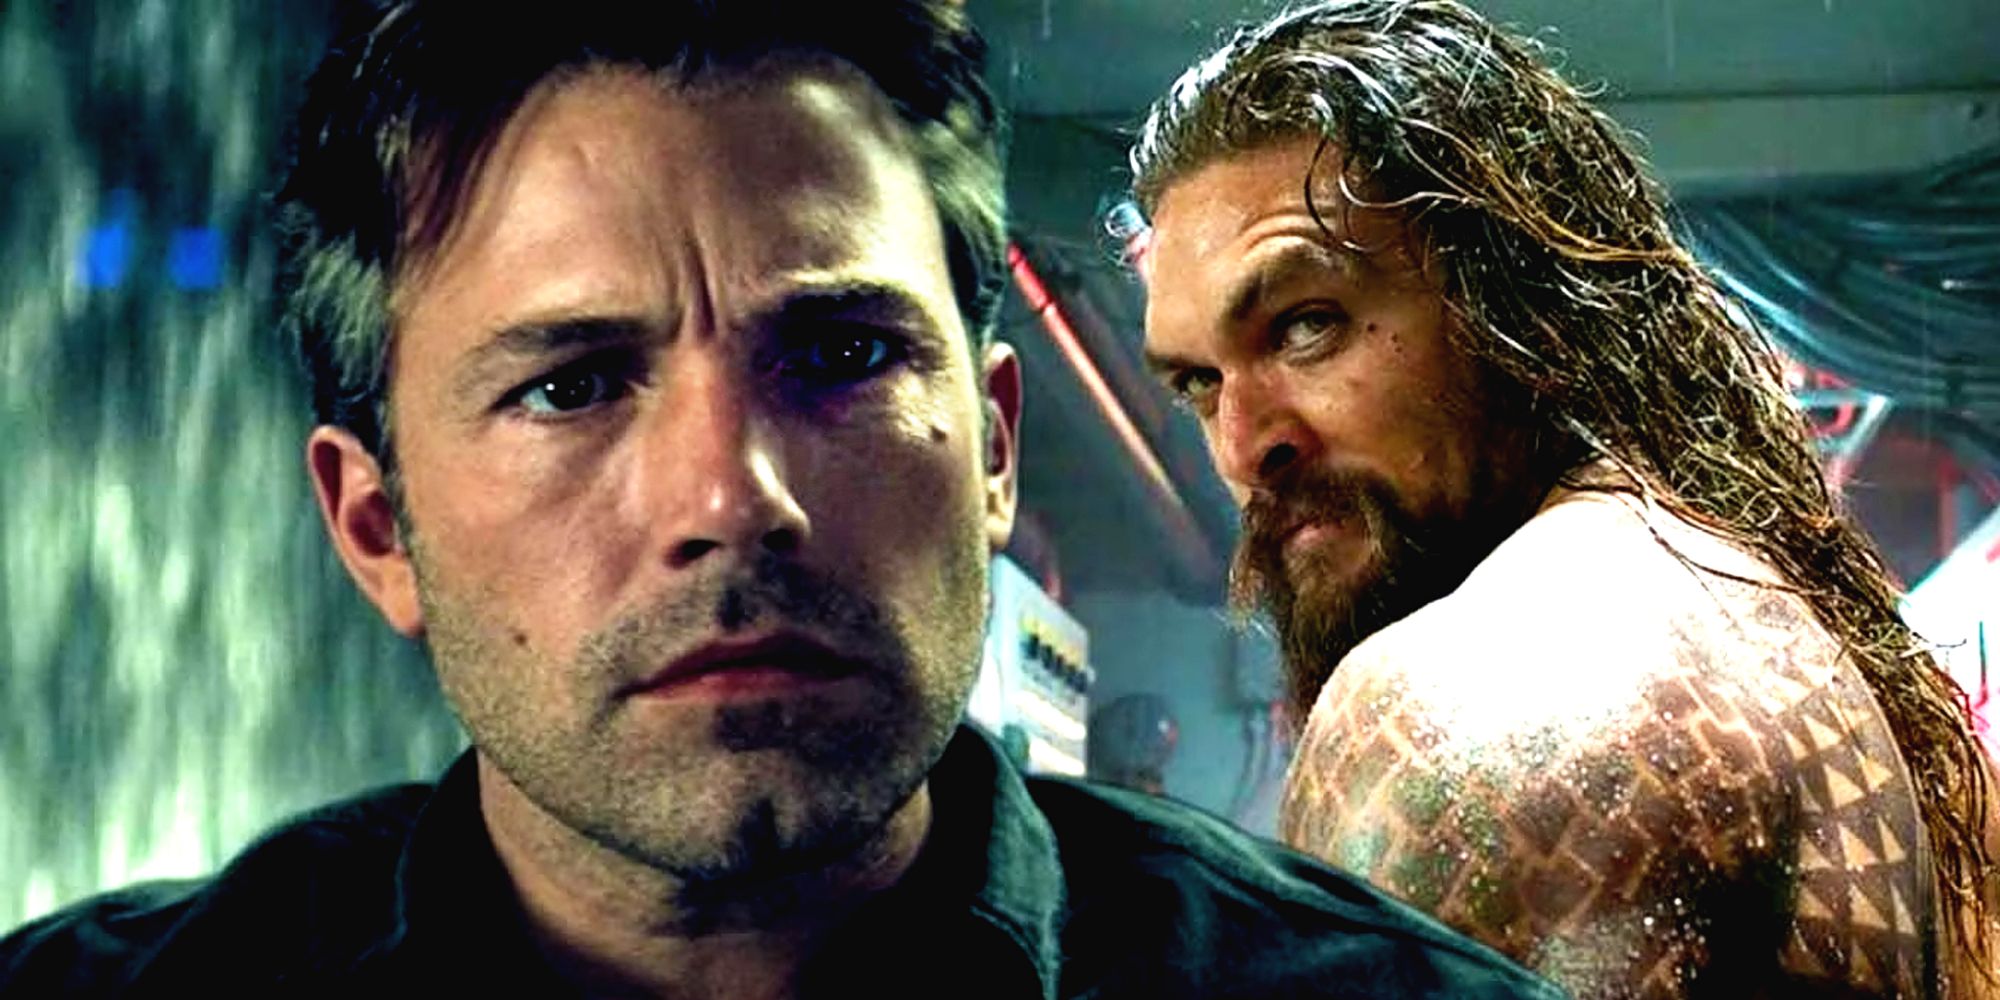 Ben Affleck's Batman and Jason Momoa's Aquaman in the DCEU